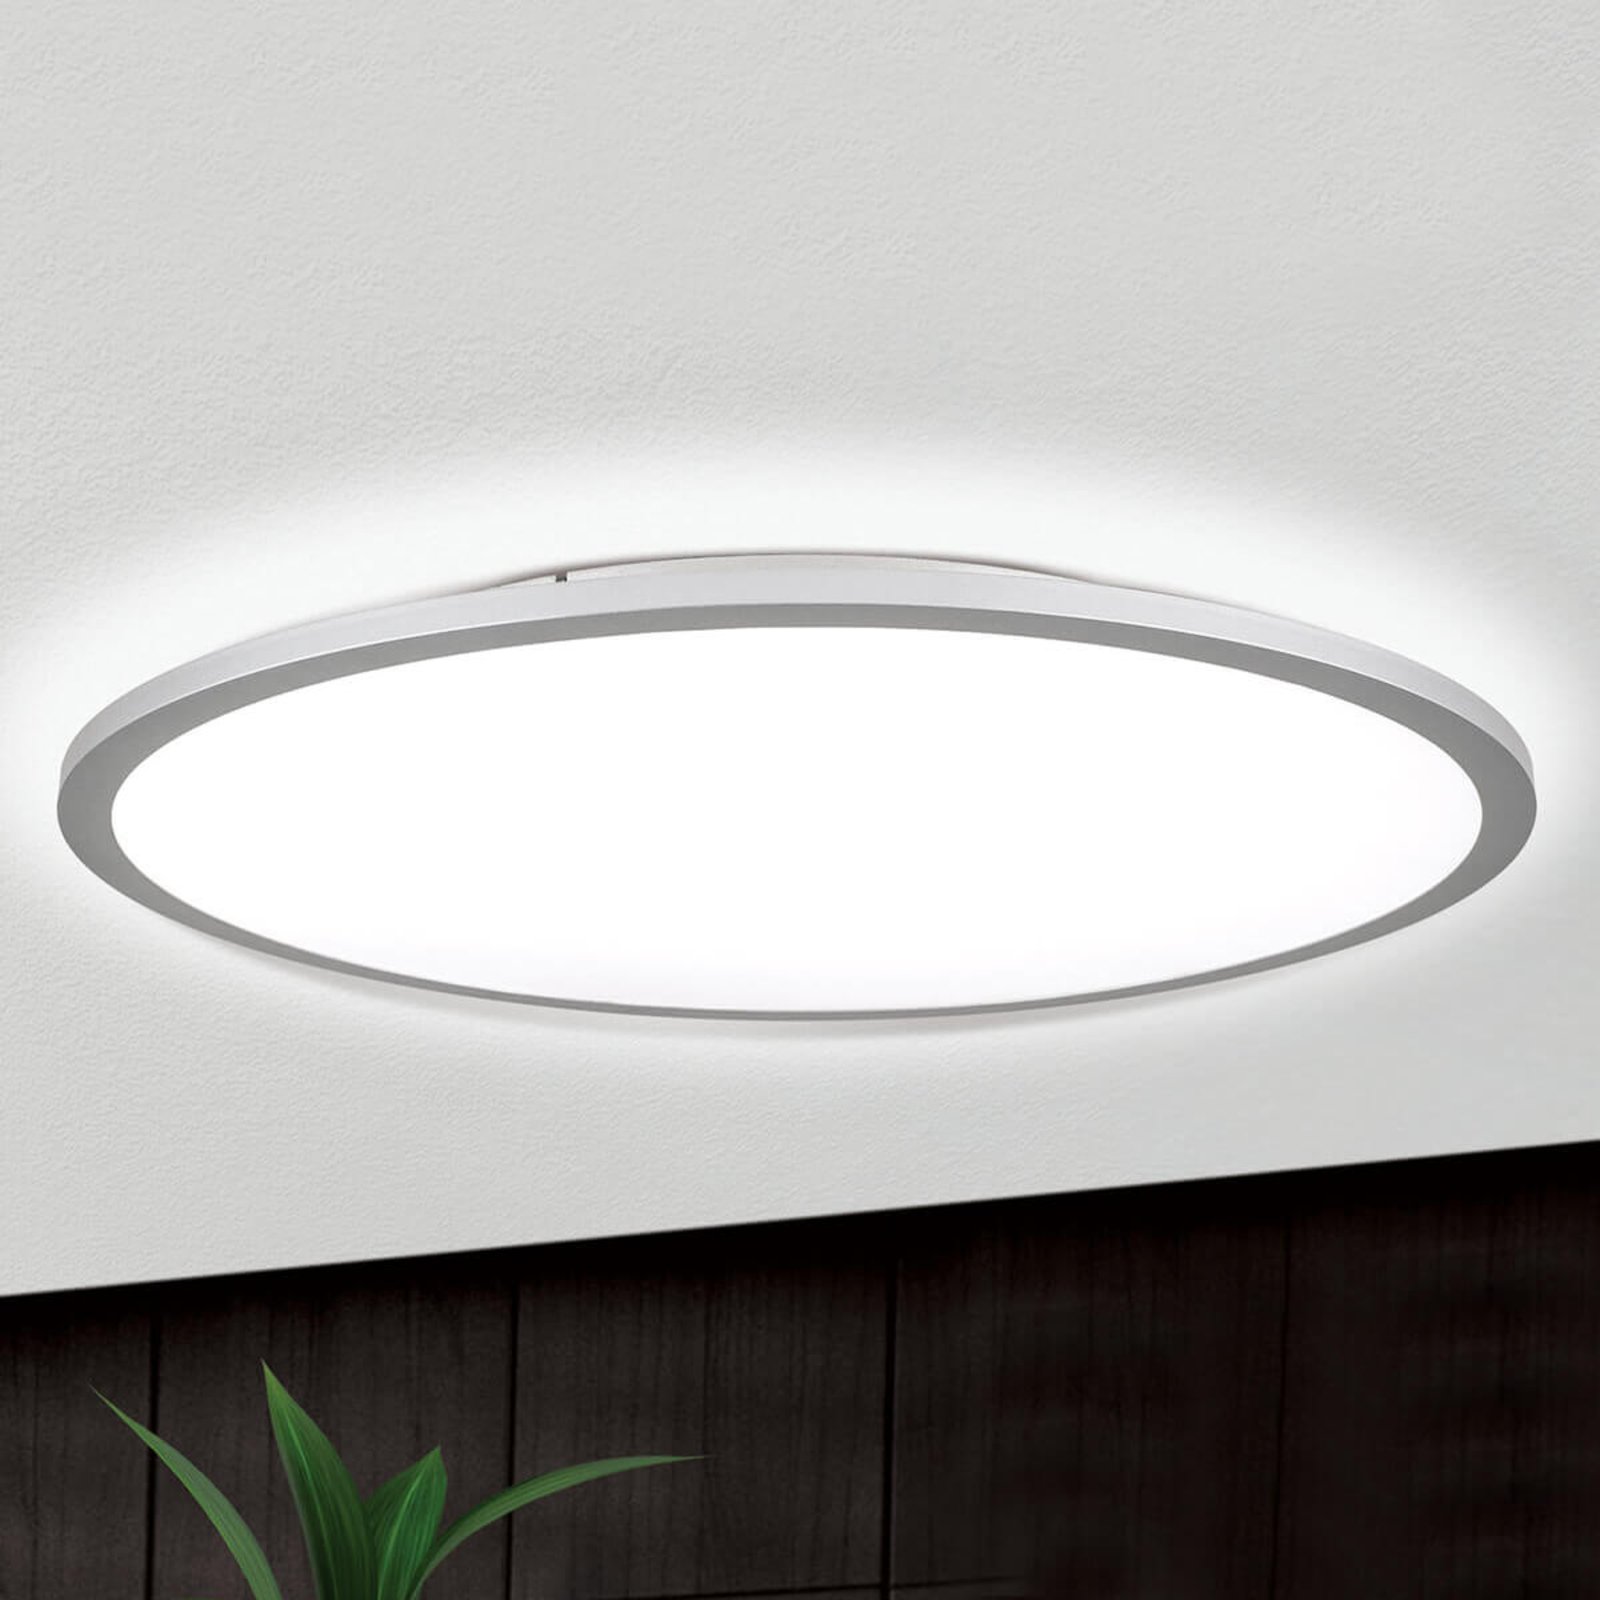 Φωτιστικό οροφής Aria LED τιτανίου, με δυνατότητα ρύθμισης - 60 cm